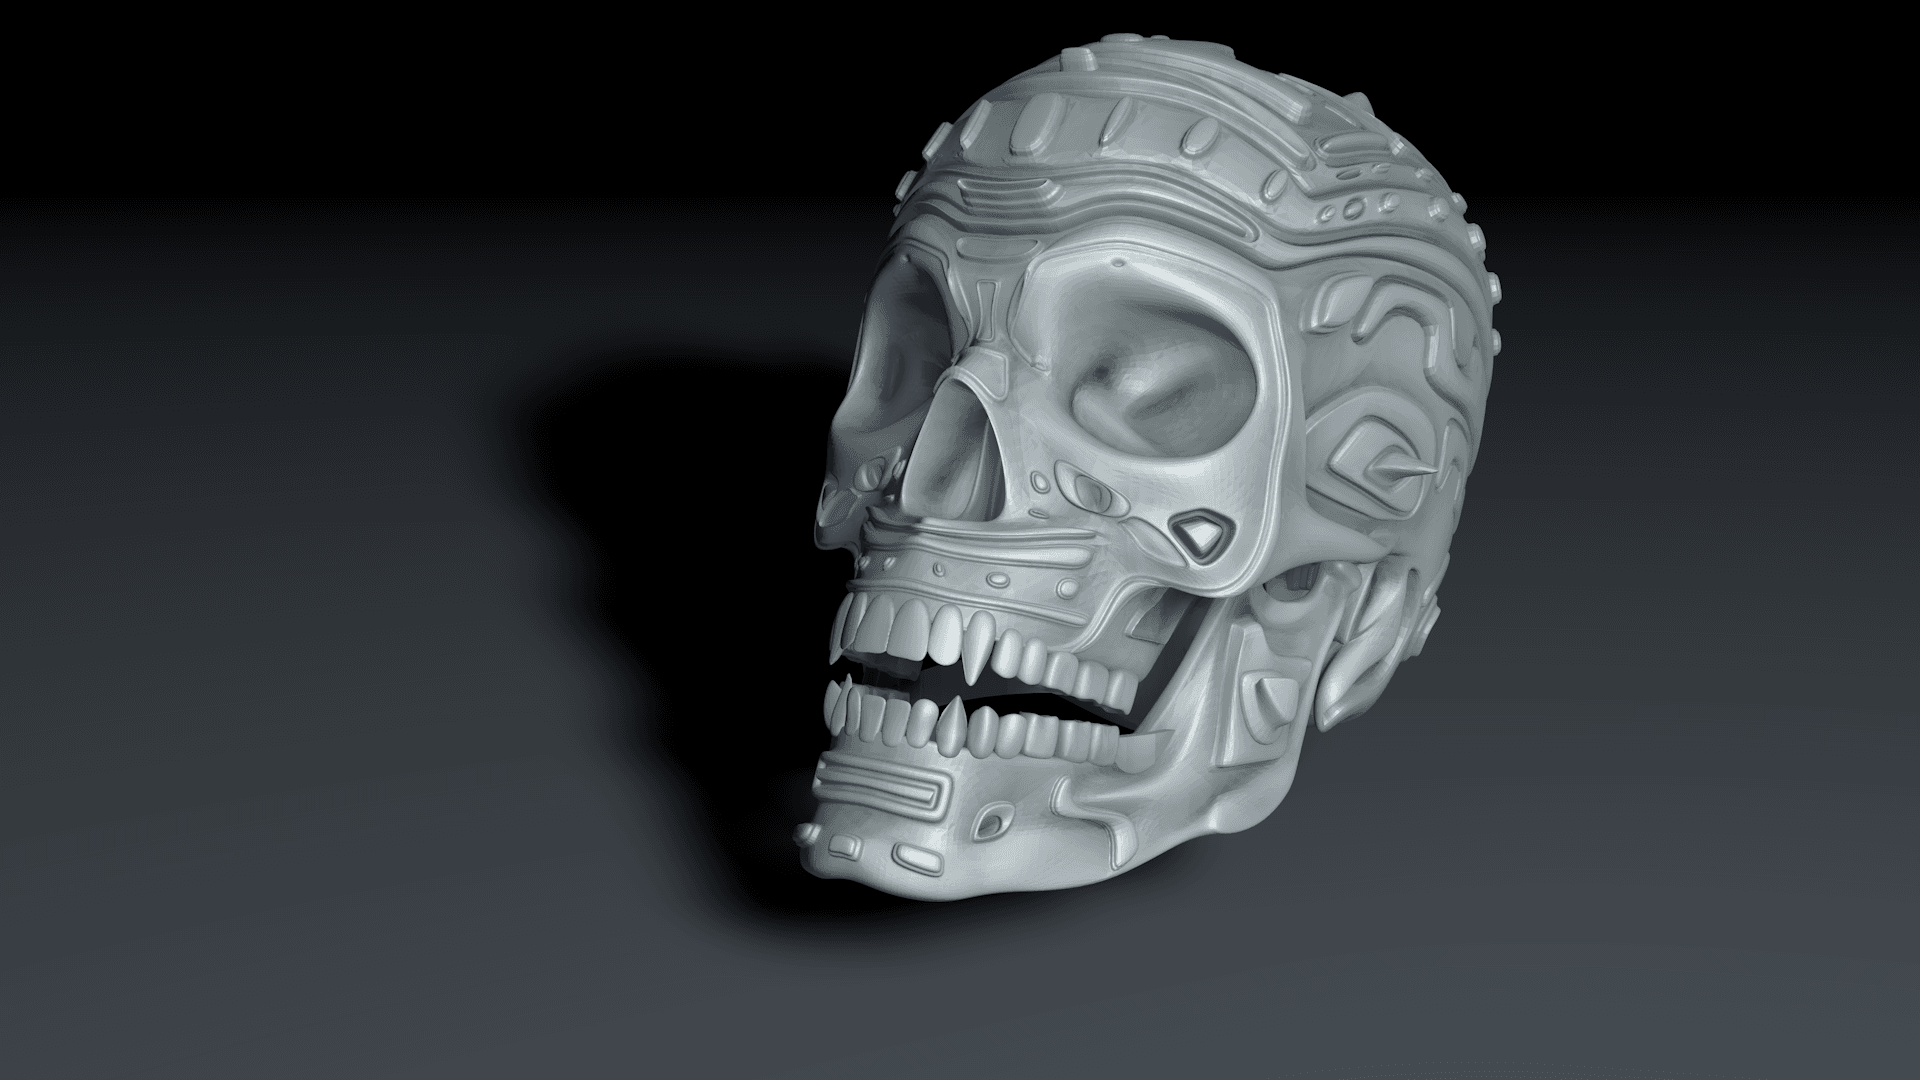 Vampire Cyborg skull fantasy art by Tommy Von